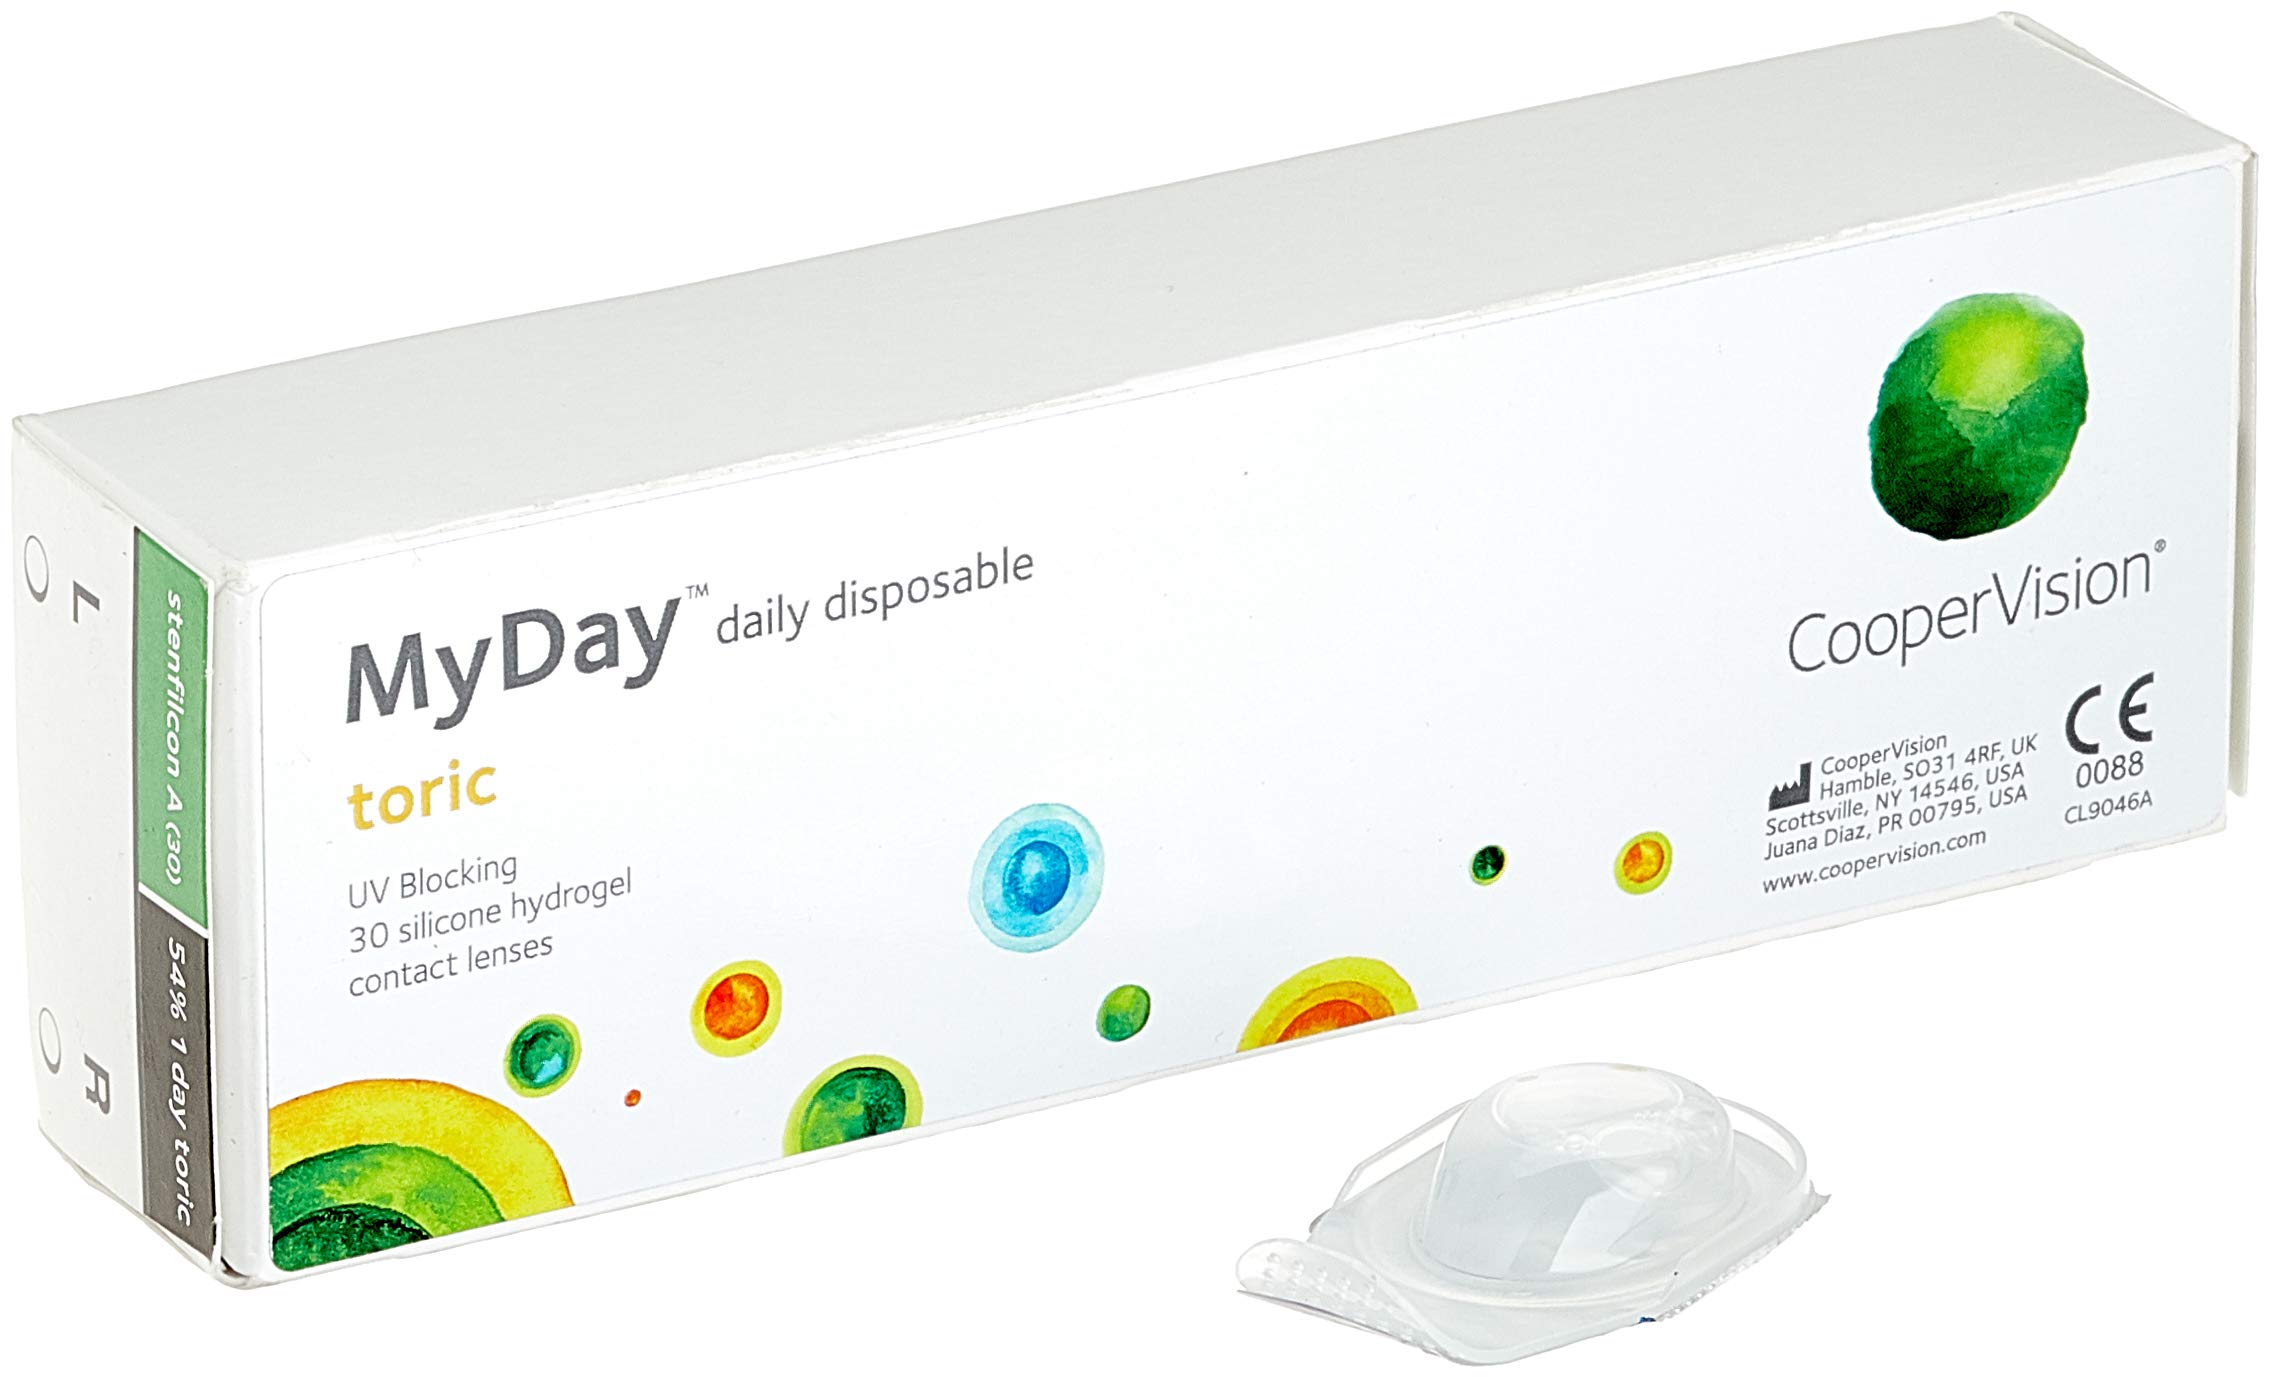 MYDAY Daily disposable Torisch Tageslinsen weich, 30 Stück / BC 8.6 mm / Dia 14.5 mm / CYL -1,75 / ACHSE 20 / -5 Dioptrien